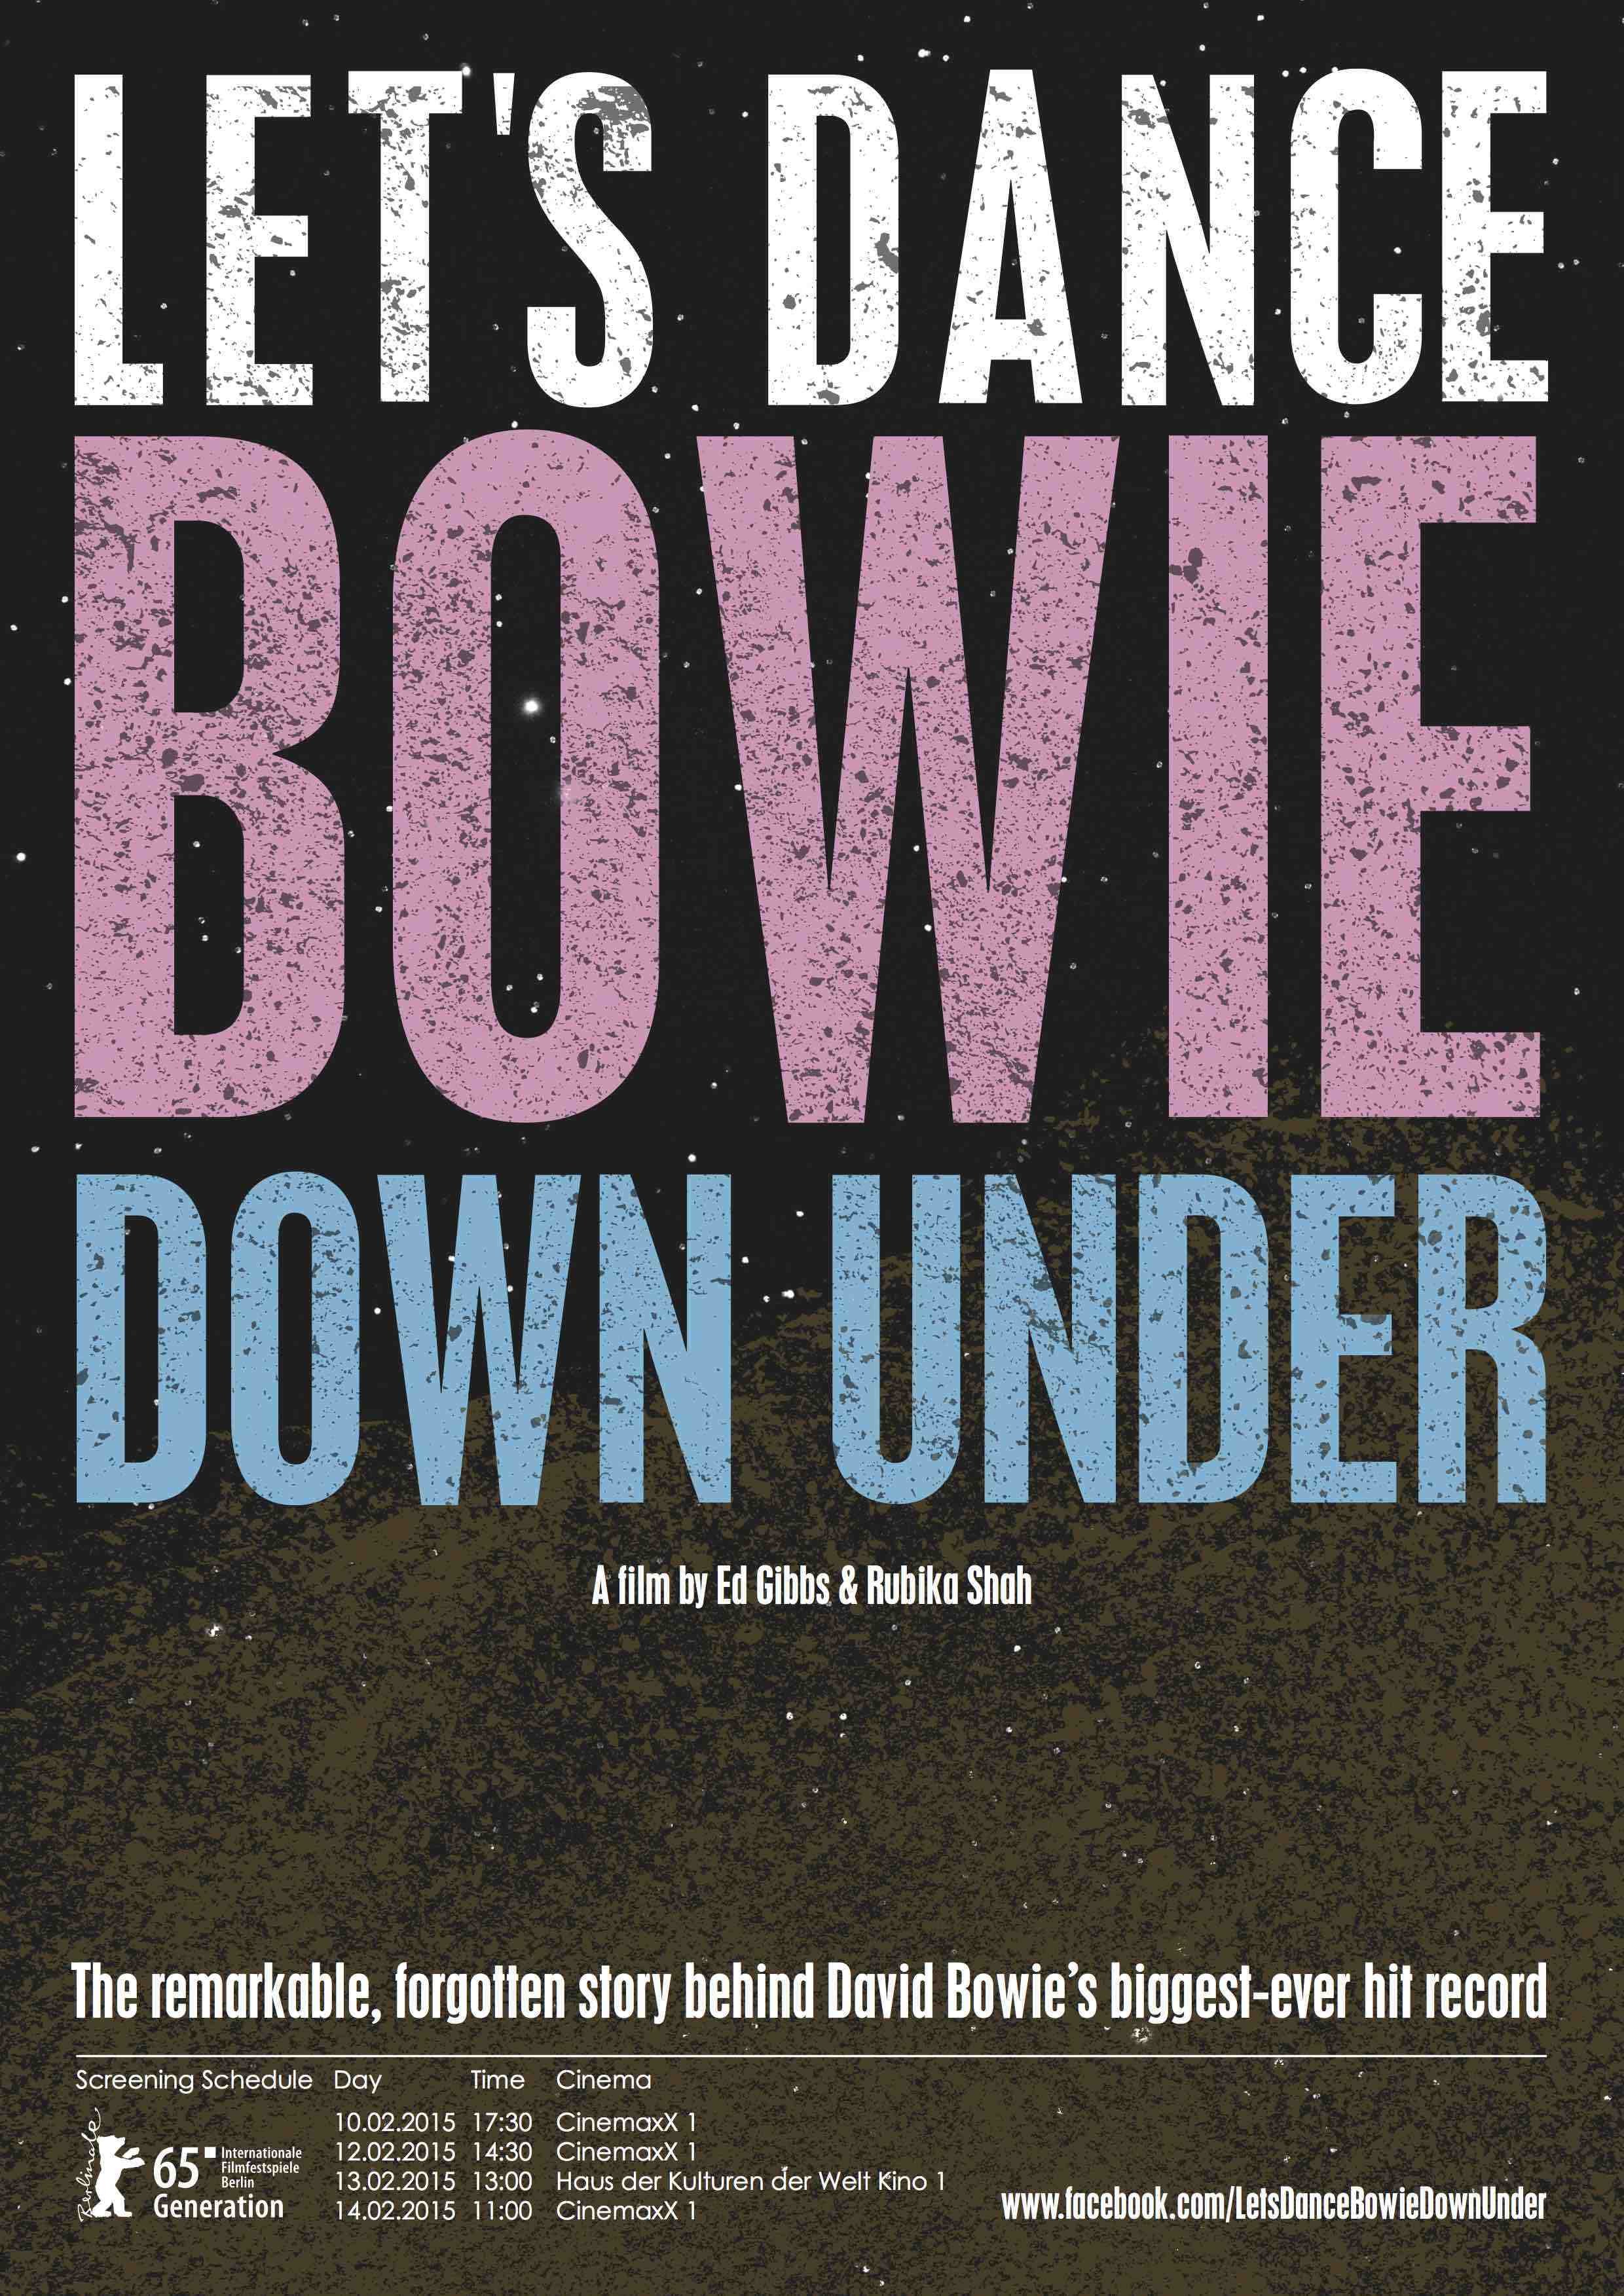 Let's Dance: Bowie Down Under